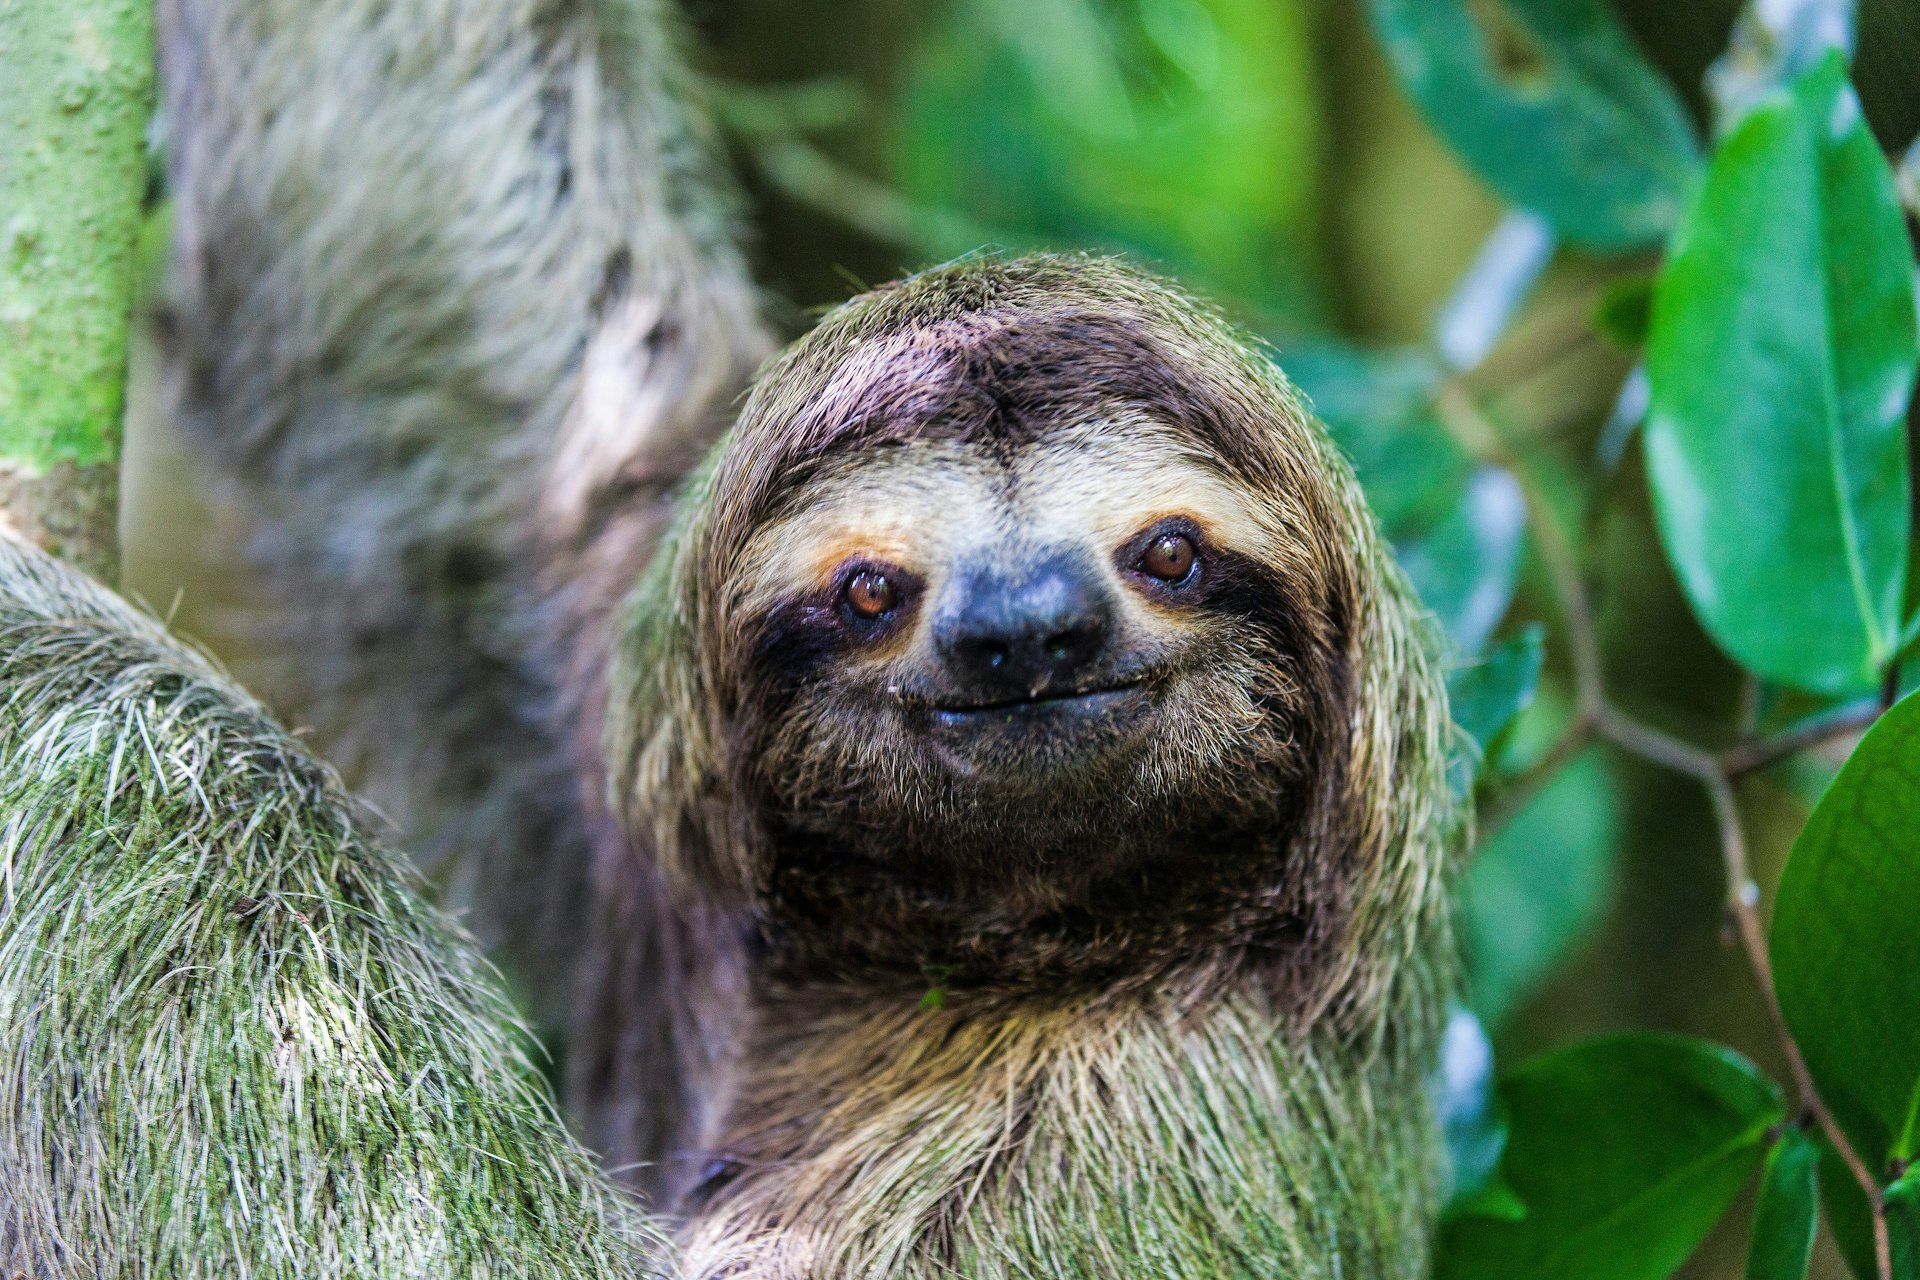 Sloth smiling at the camera